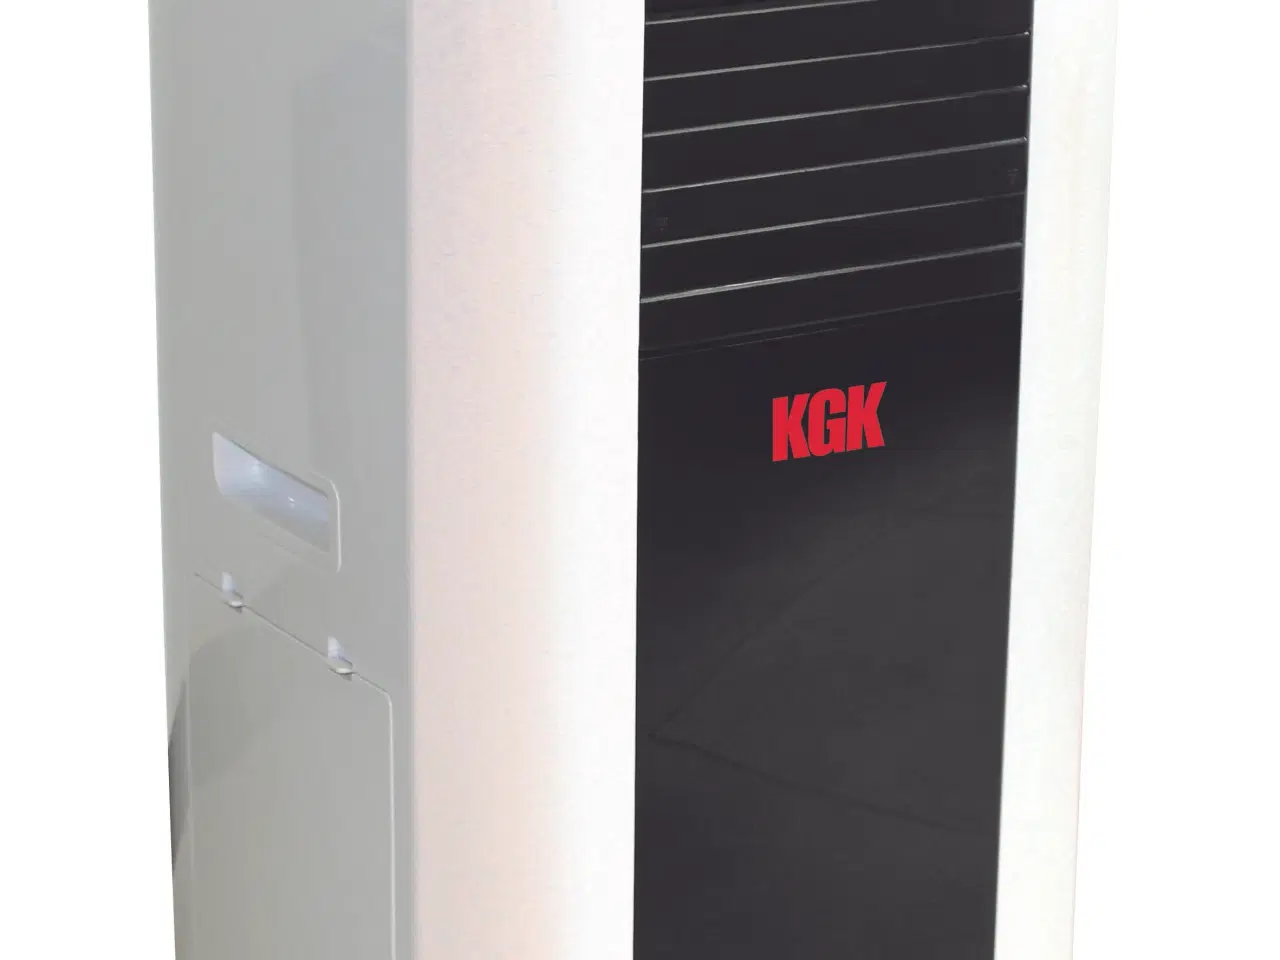 Billede 1 - Air-condition KGK PAC-15 (med varme)